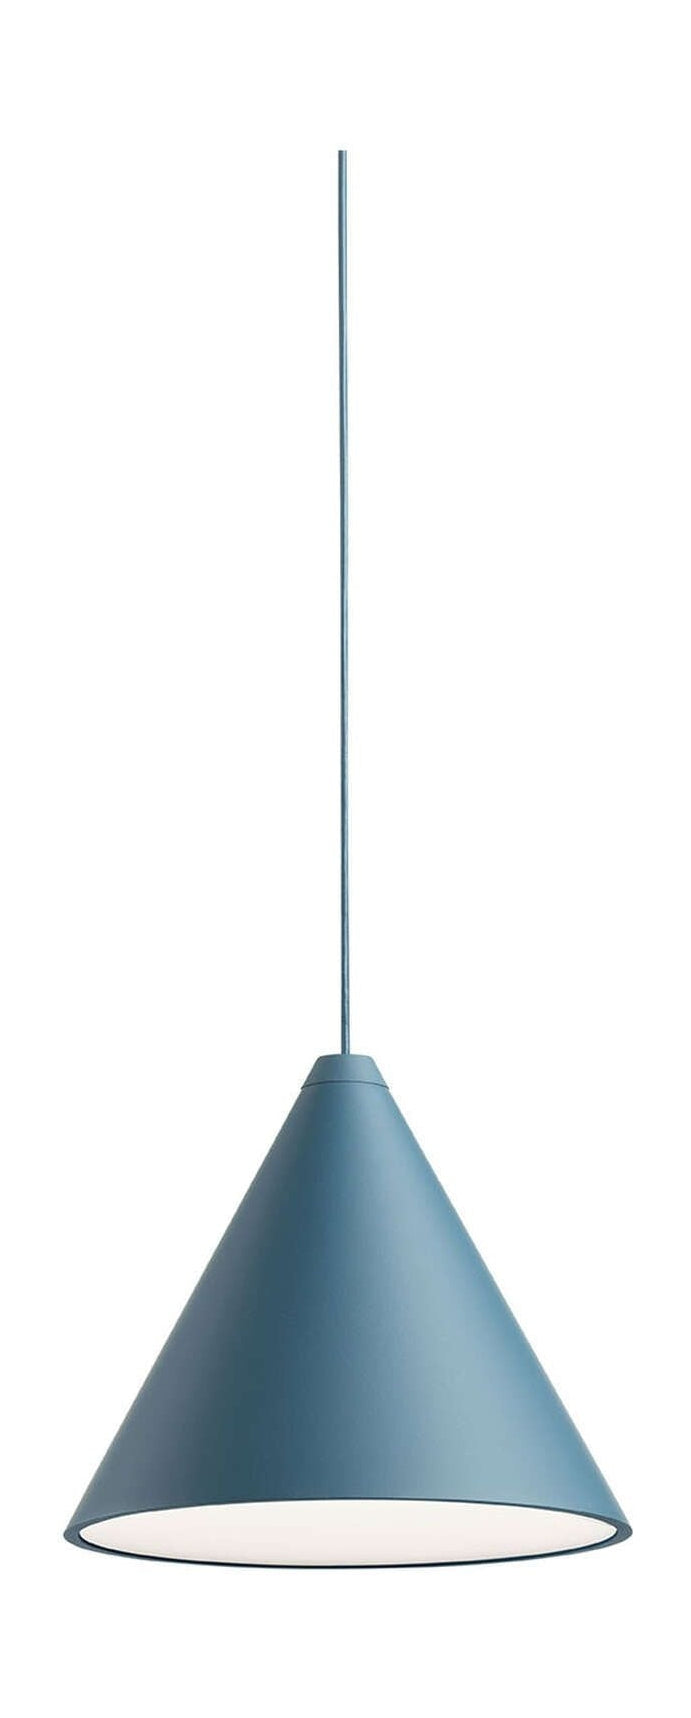 Flos String Light Cone hänge med spjäll 12 m, blå